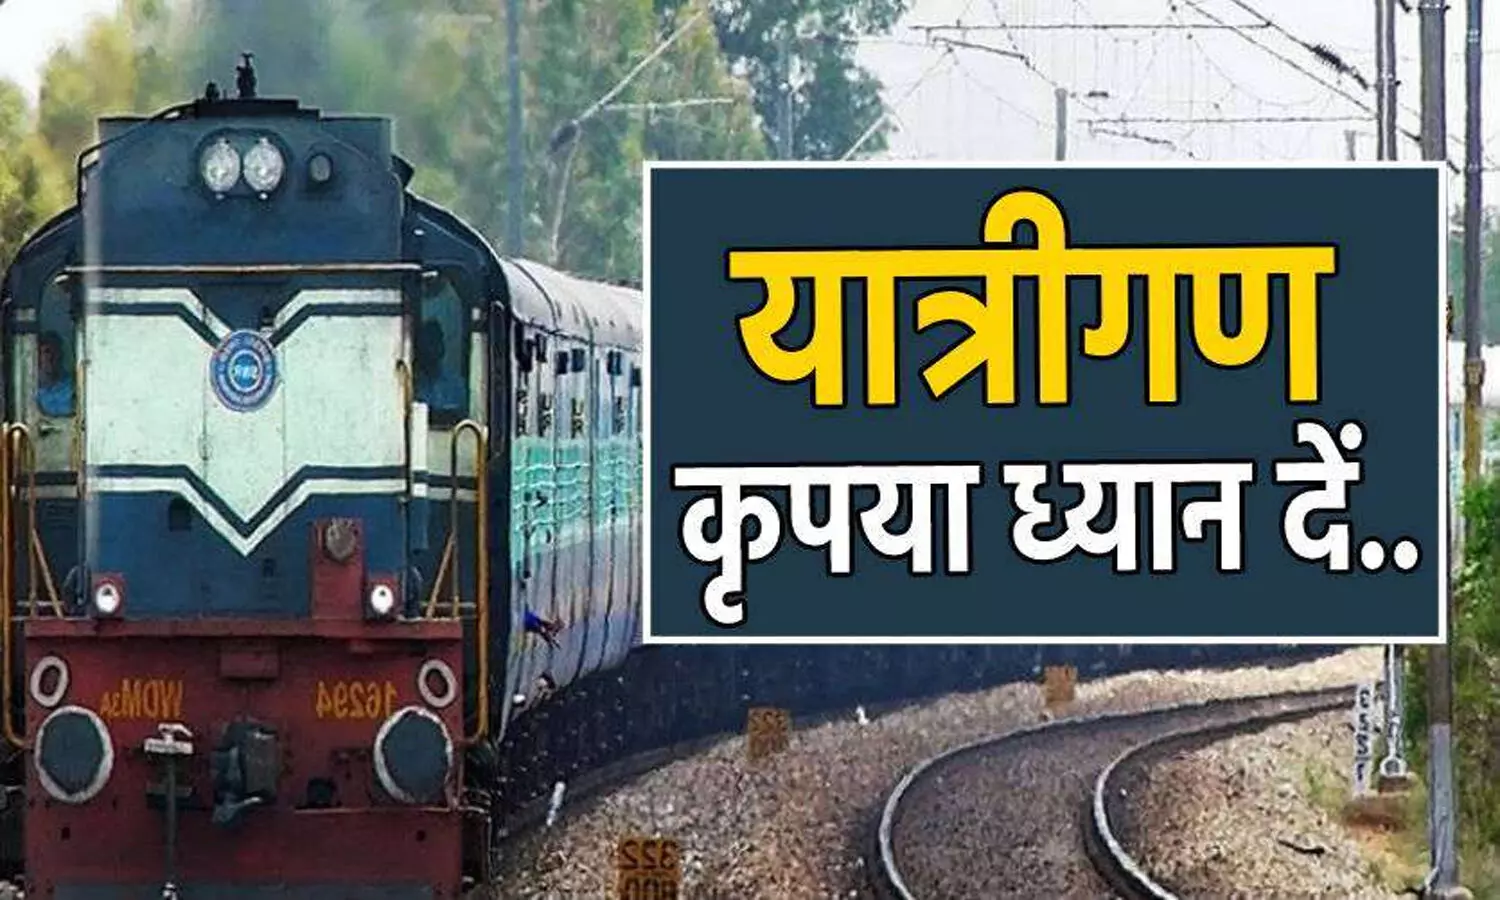 Rewa-Bhopal Holi Special Train: लाखो यात्रियों के लिए बड़ी खबर! कल रीवा से भोपाल के बीच दौड़ेगी होली स्पेशल ट्रेन